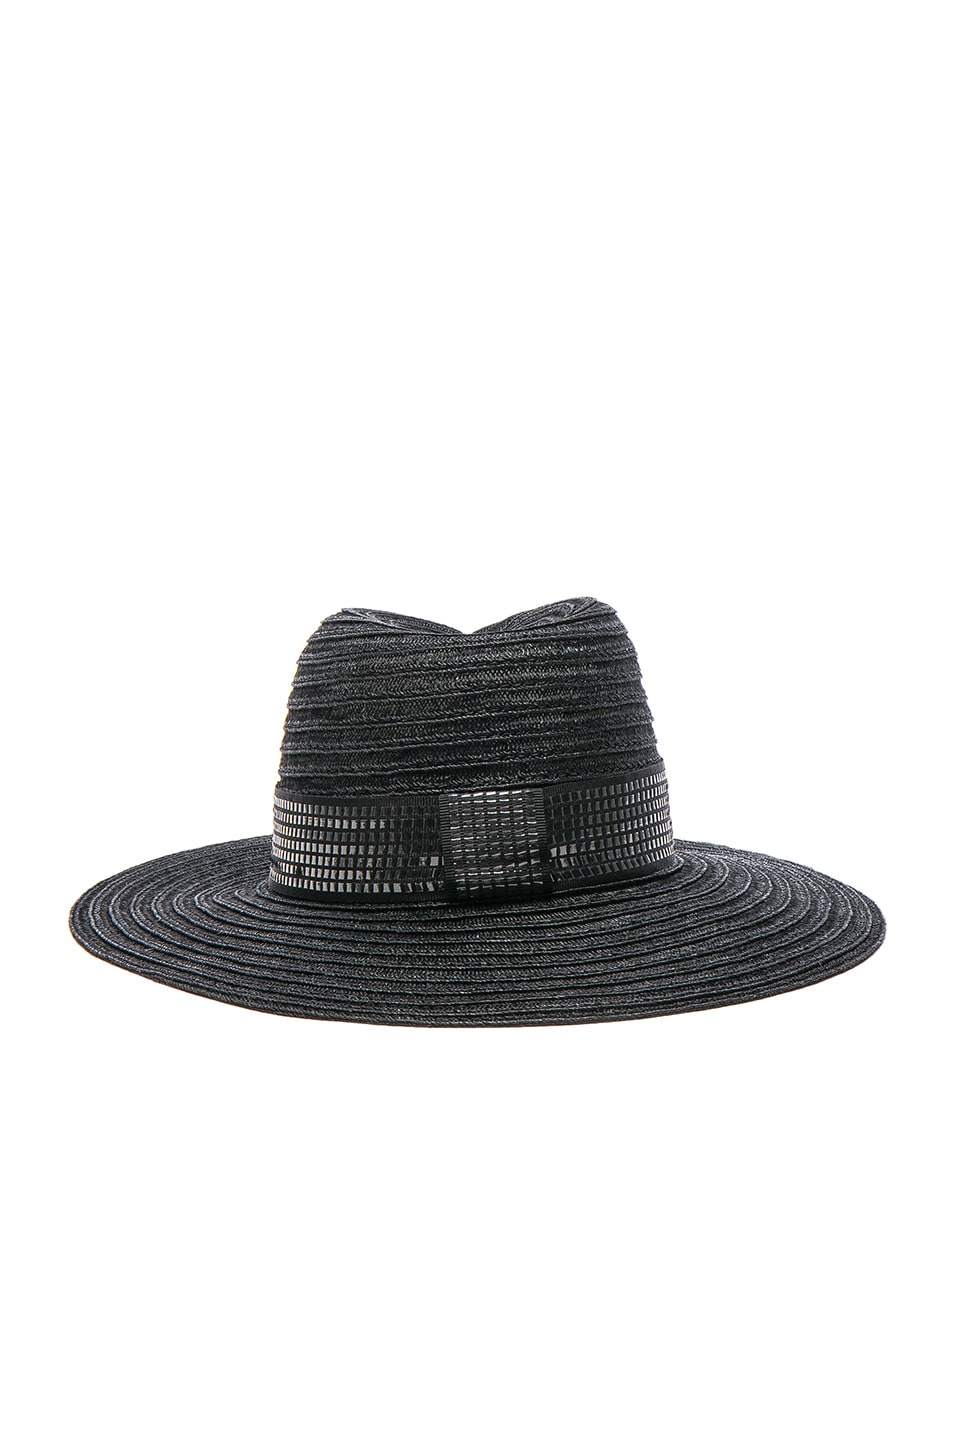 MAISON MICHEL Virginie Hat in Black | ModeSens